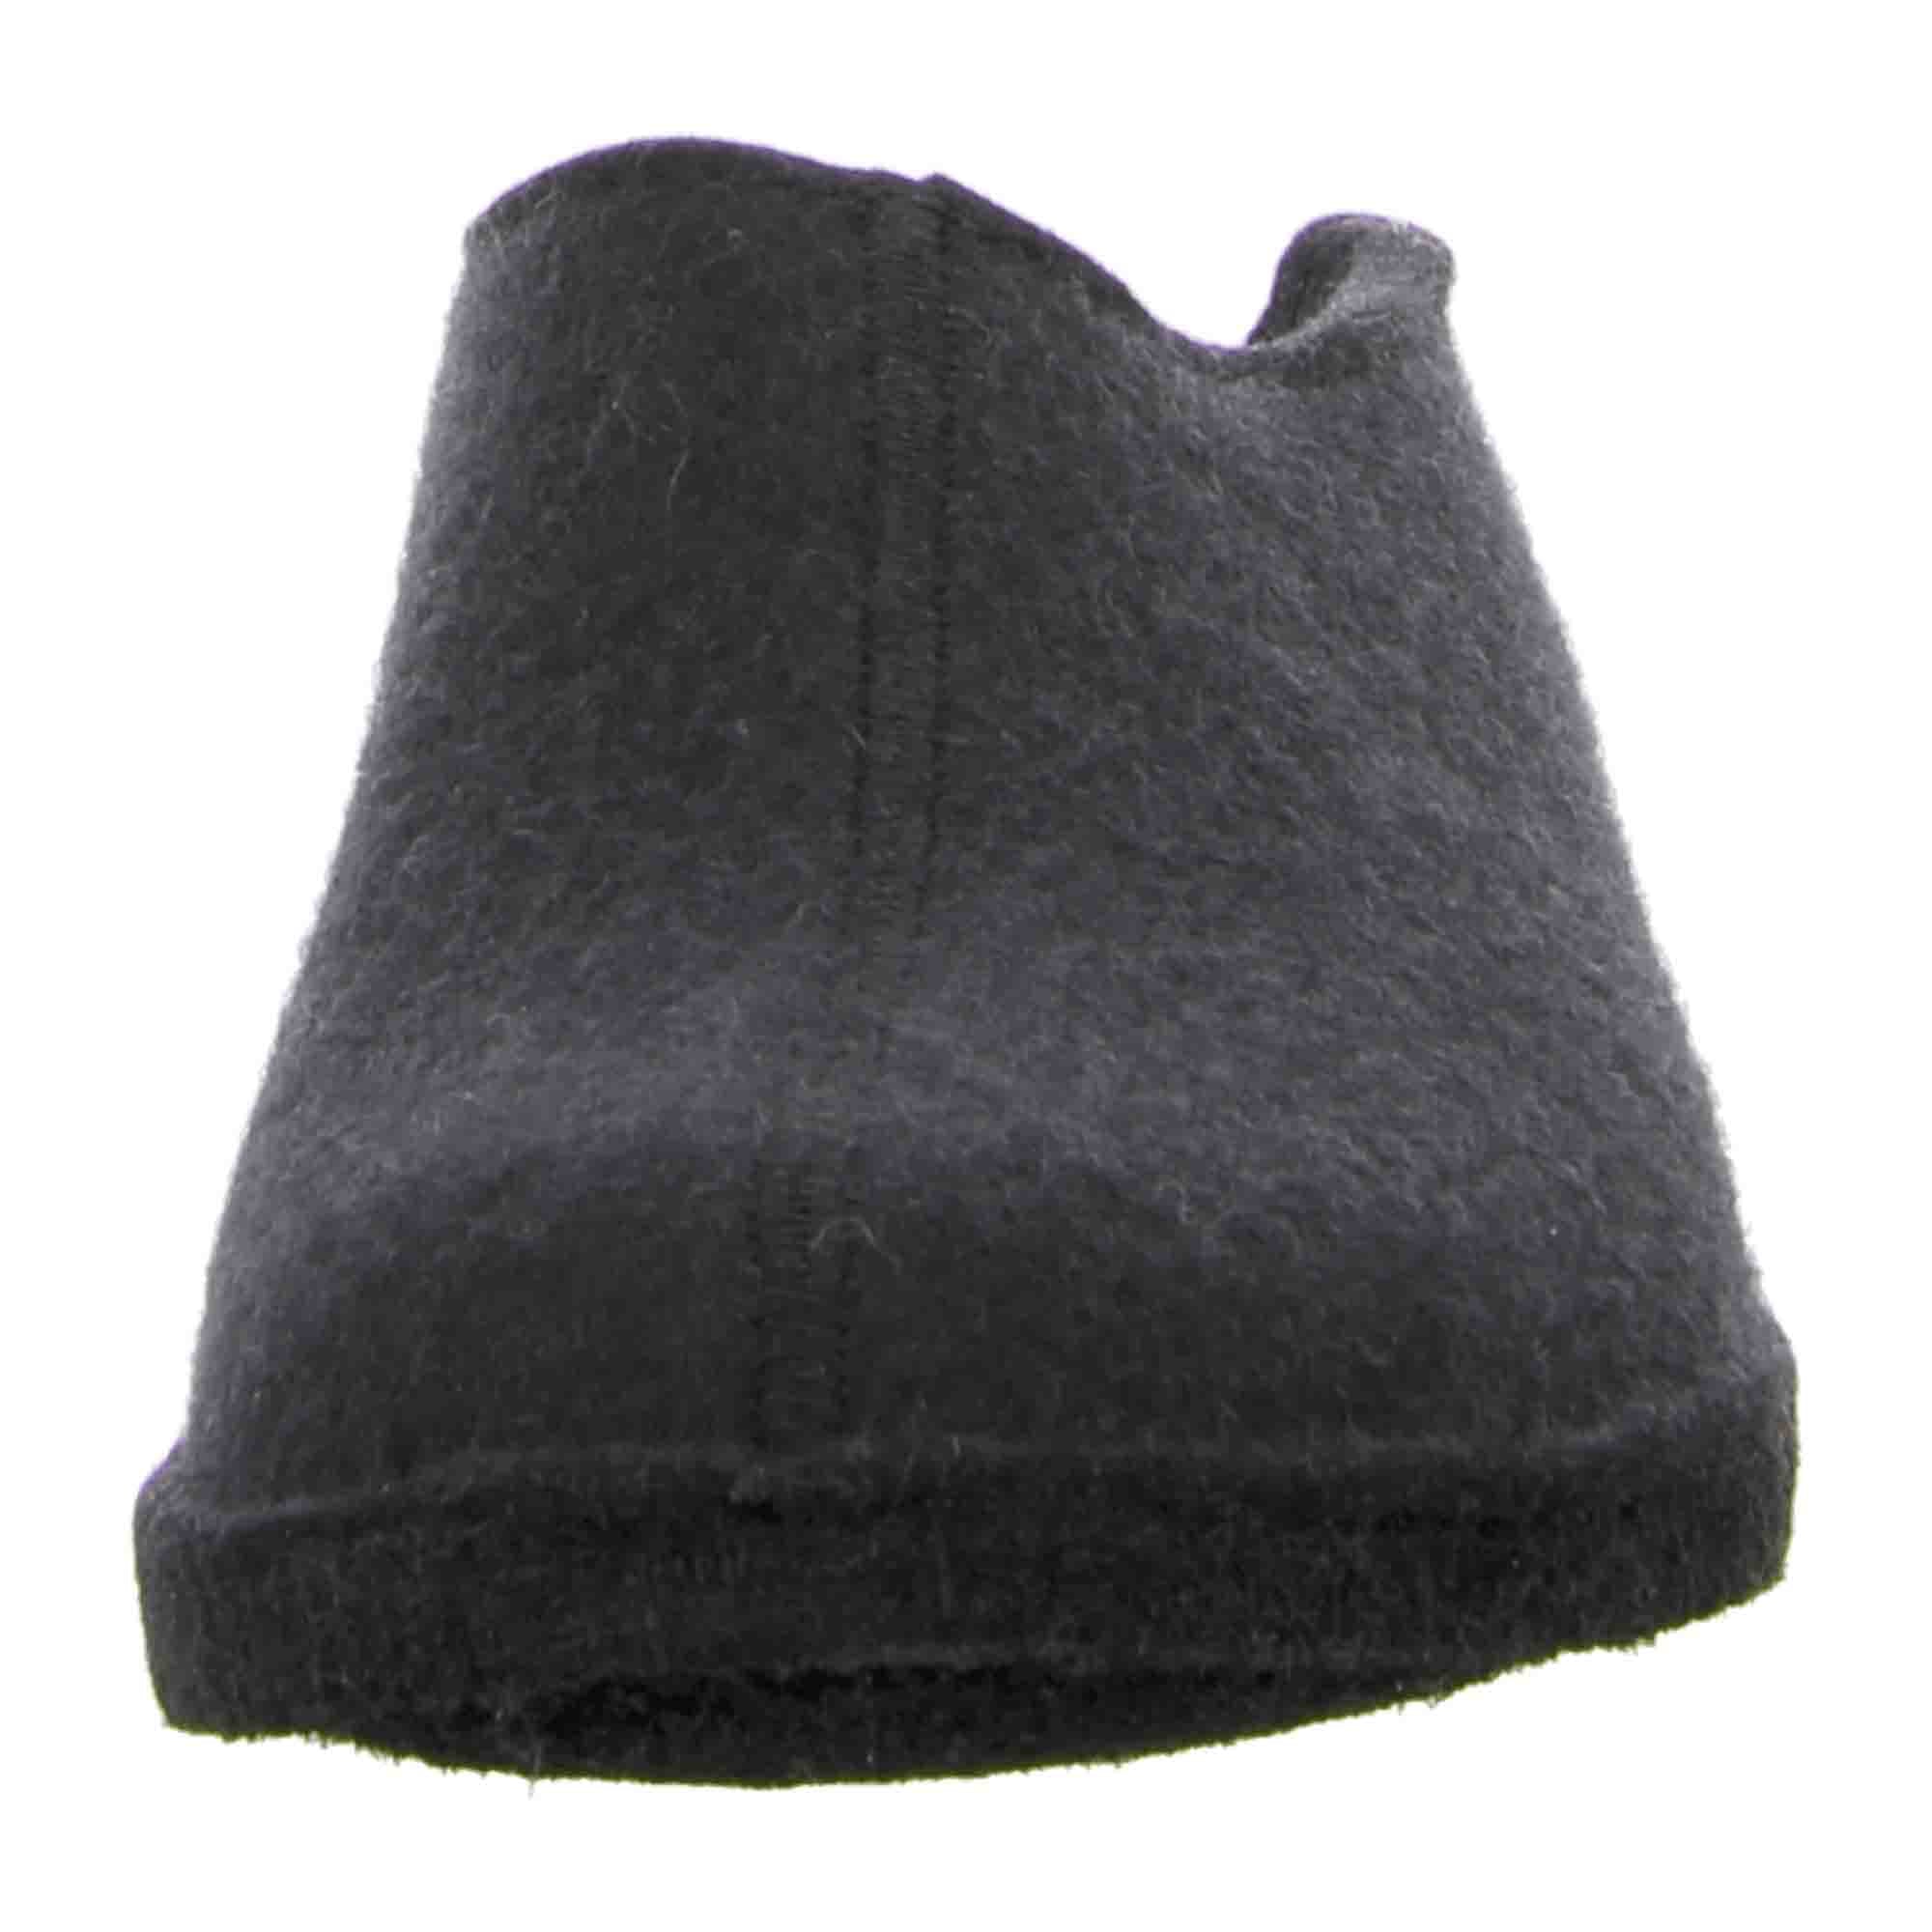 Haflinger Flair Smily Men's Slippers - Black, Comfortable & Stylish